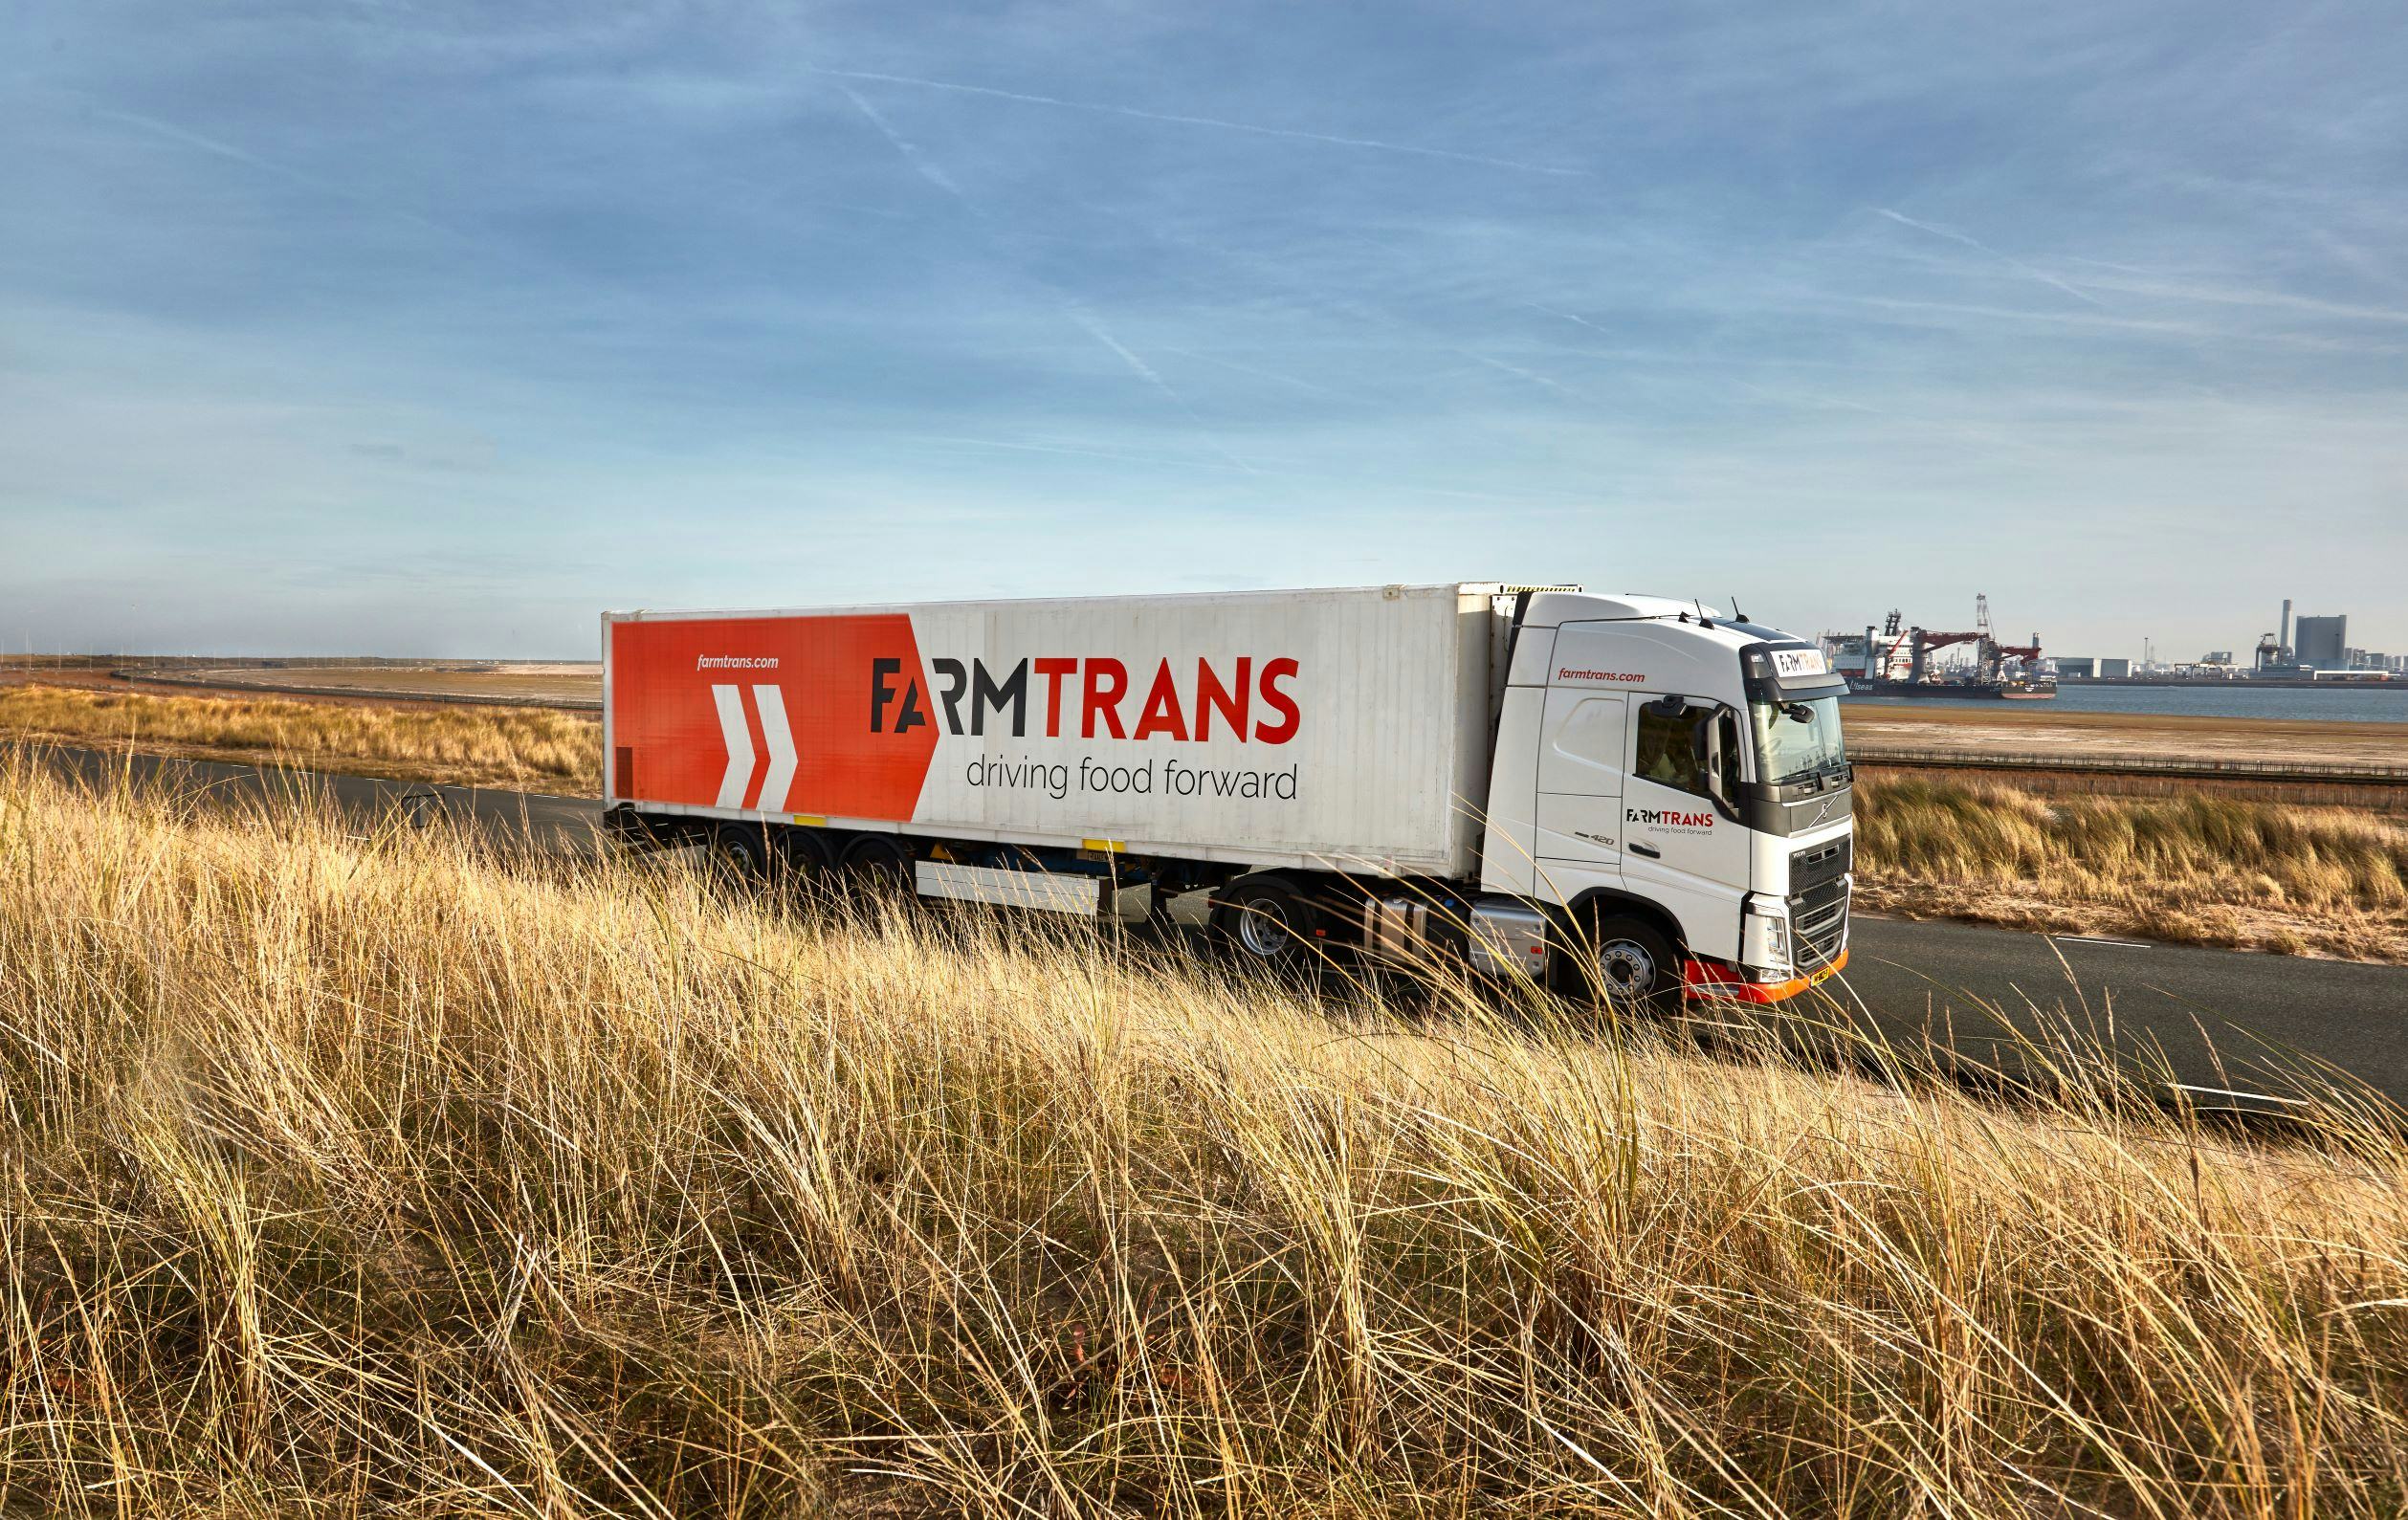 Farm Trans stroomlijnde haar logistieke processen 